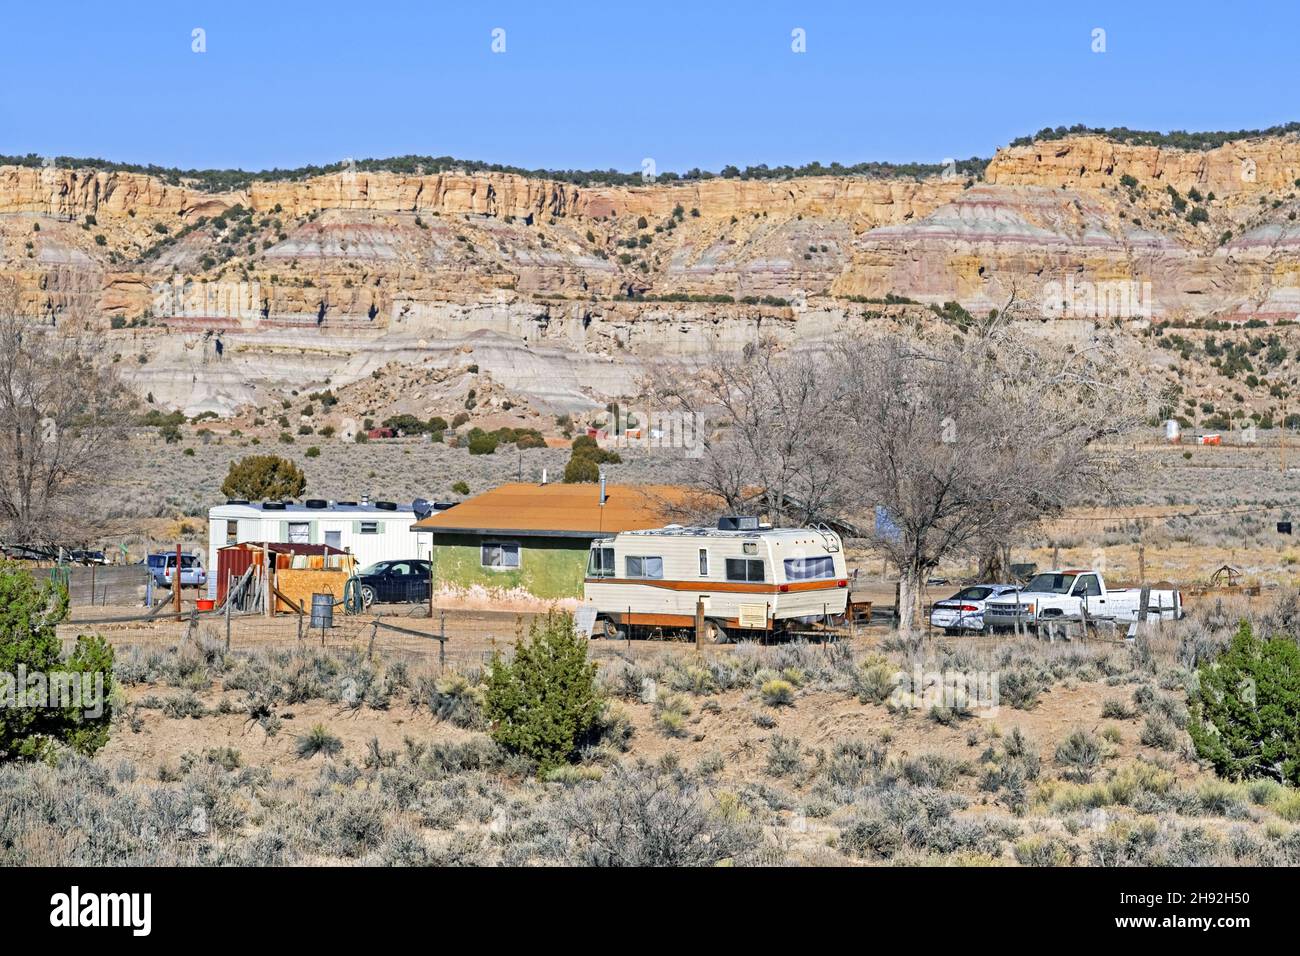 Homestead / mobil home / trailer home / trailer house trailer in Navajo Nation, territorio dei nativi americani in New Mexico, Stati Uniti / USA Foto Stock